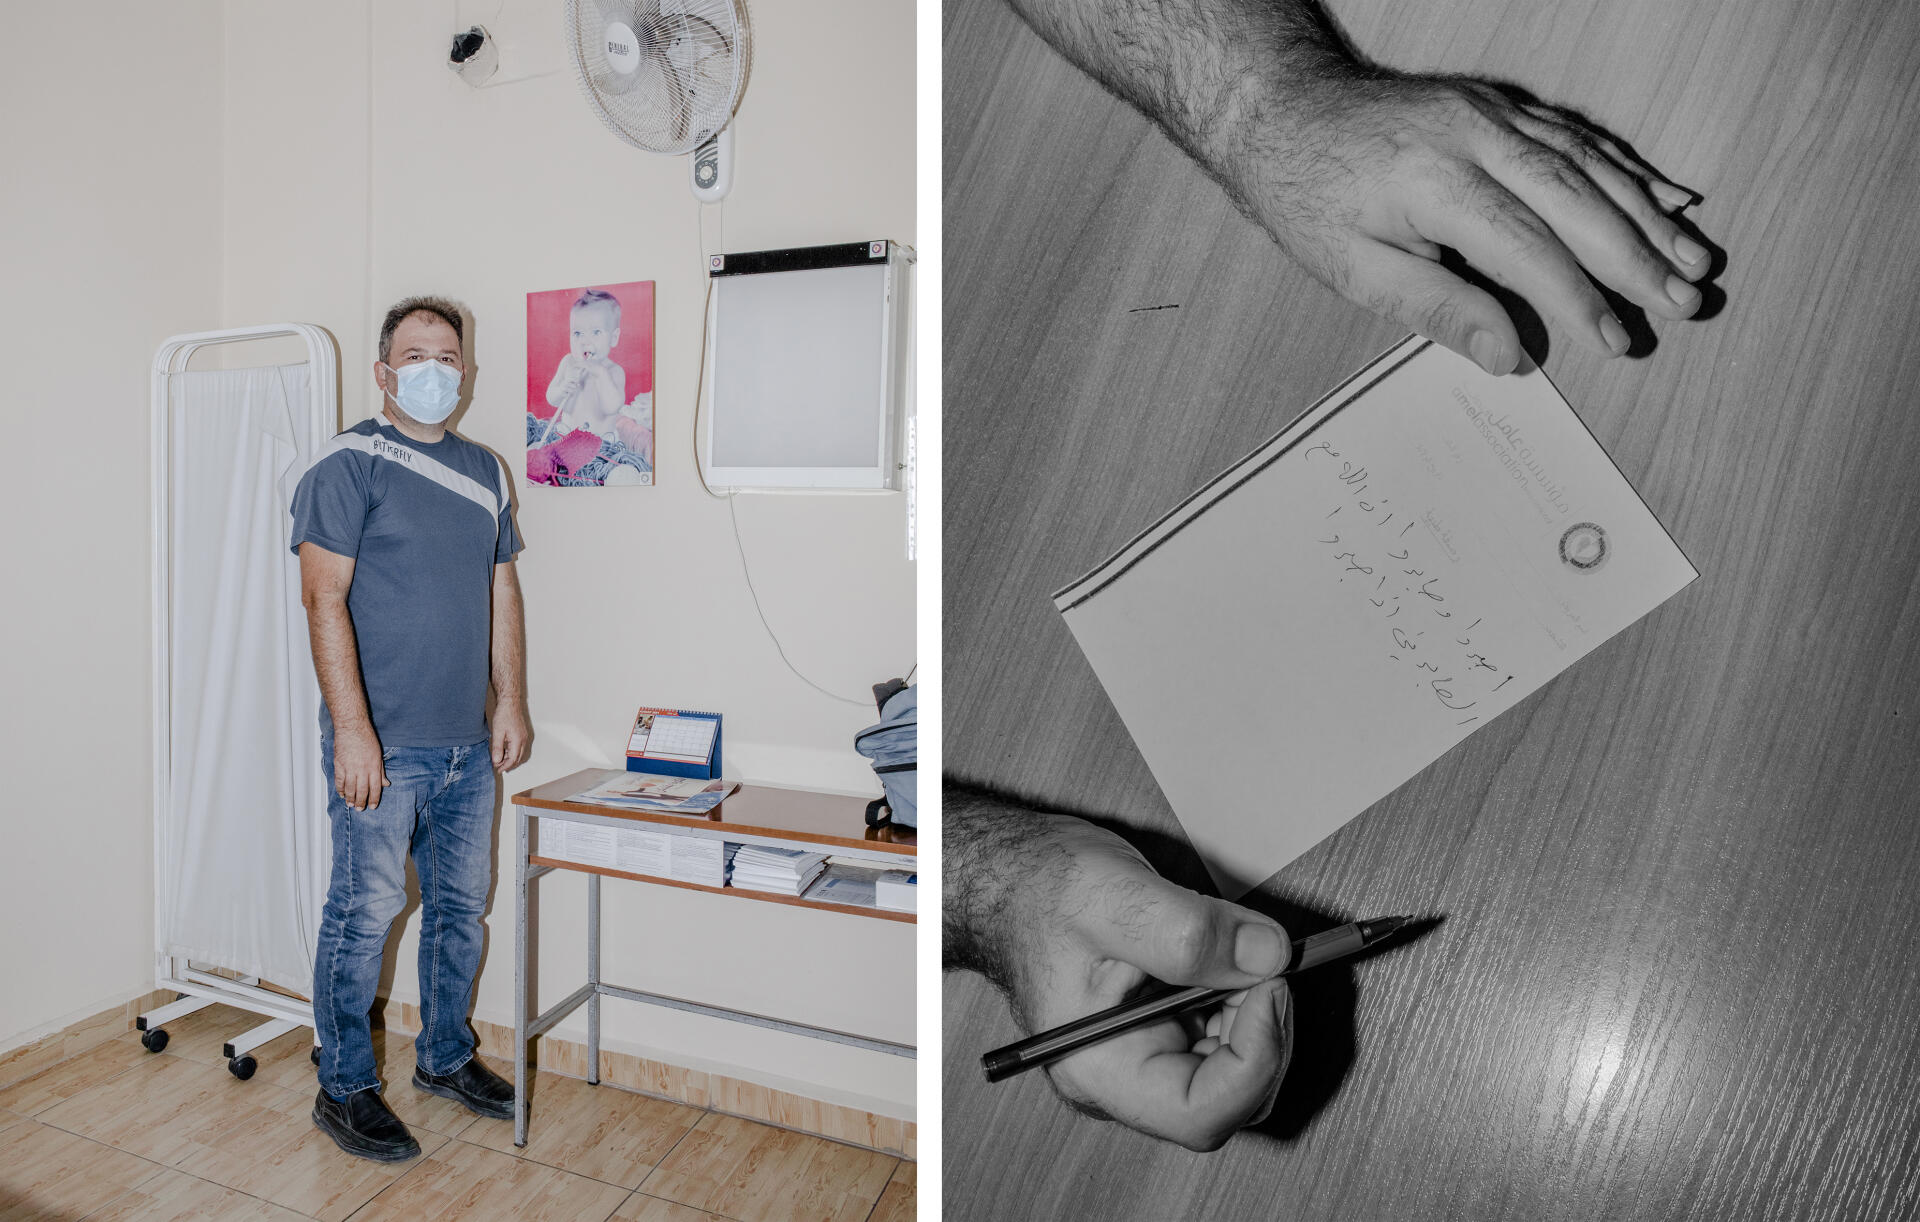 El Ain, au Liban, le 12 août 2021. Ahmad Daher, médecin, dans la clinique de l’ONG Amel (à gauche). Sur une ordonnance, il écrit une phrase du Coran : « Soyez patients, très patients, parce que Dieu est avec les patients dans leur patience. »